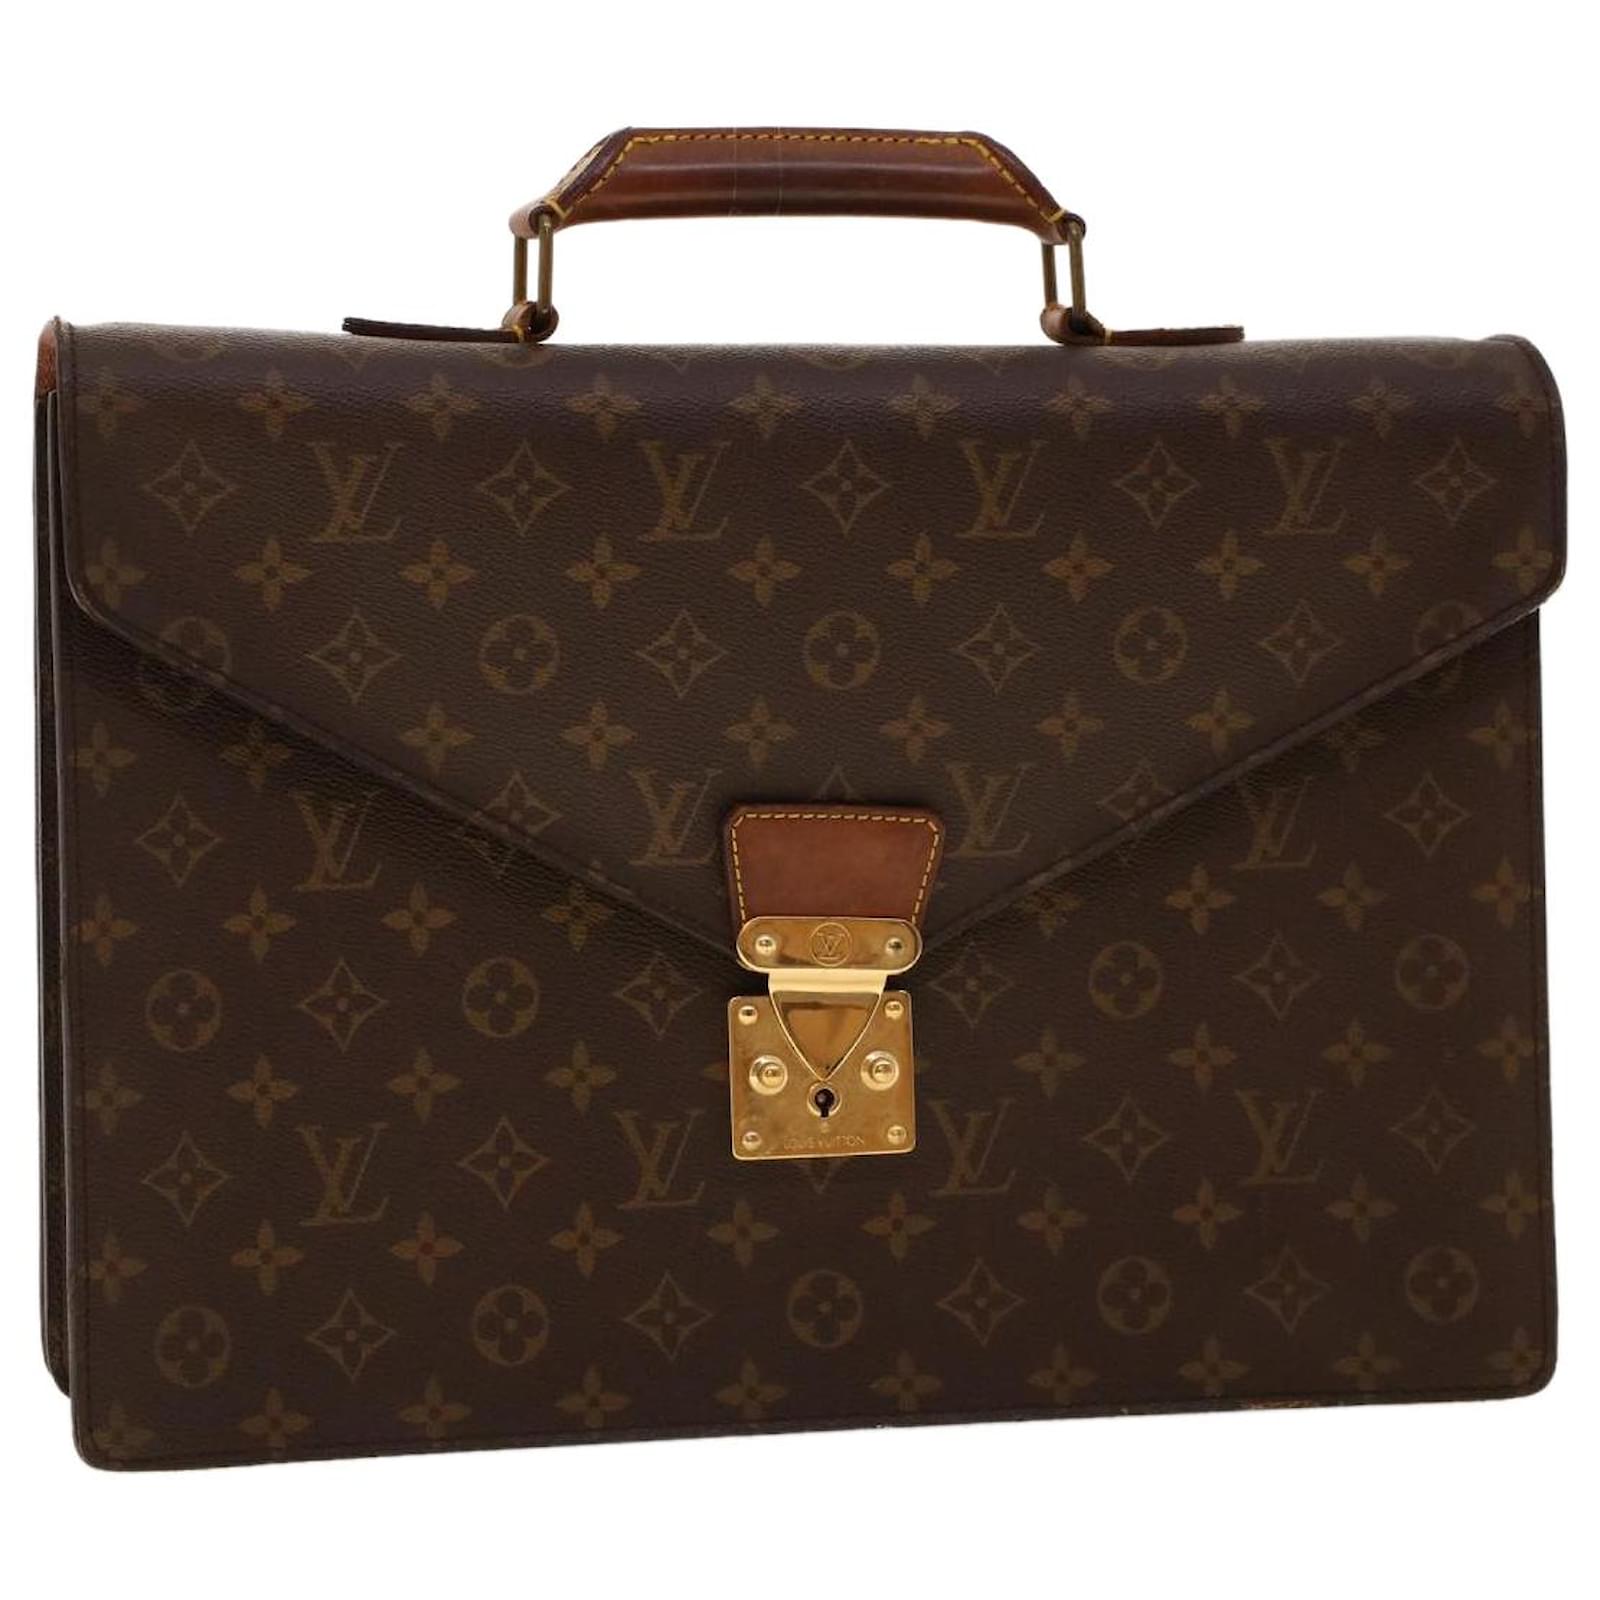 lv briefcase vintage